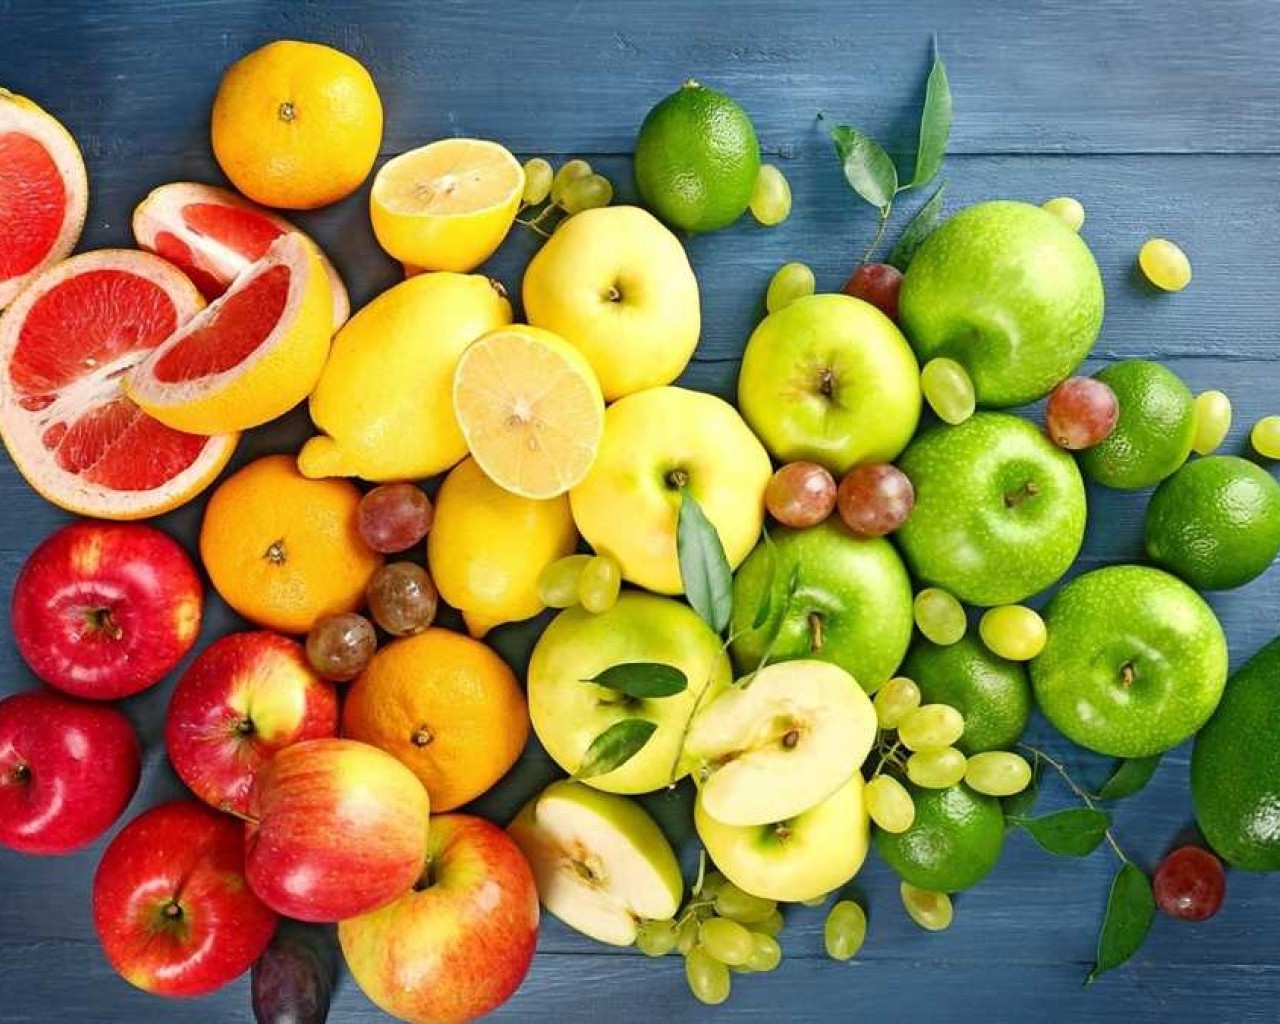 Исследования показали, что потребление свежих фруктов помогает укрепить иммунитет, улучшить пищеварение, а также предотвратить возникновение серьезных заболеваний и преждевременное старение